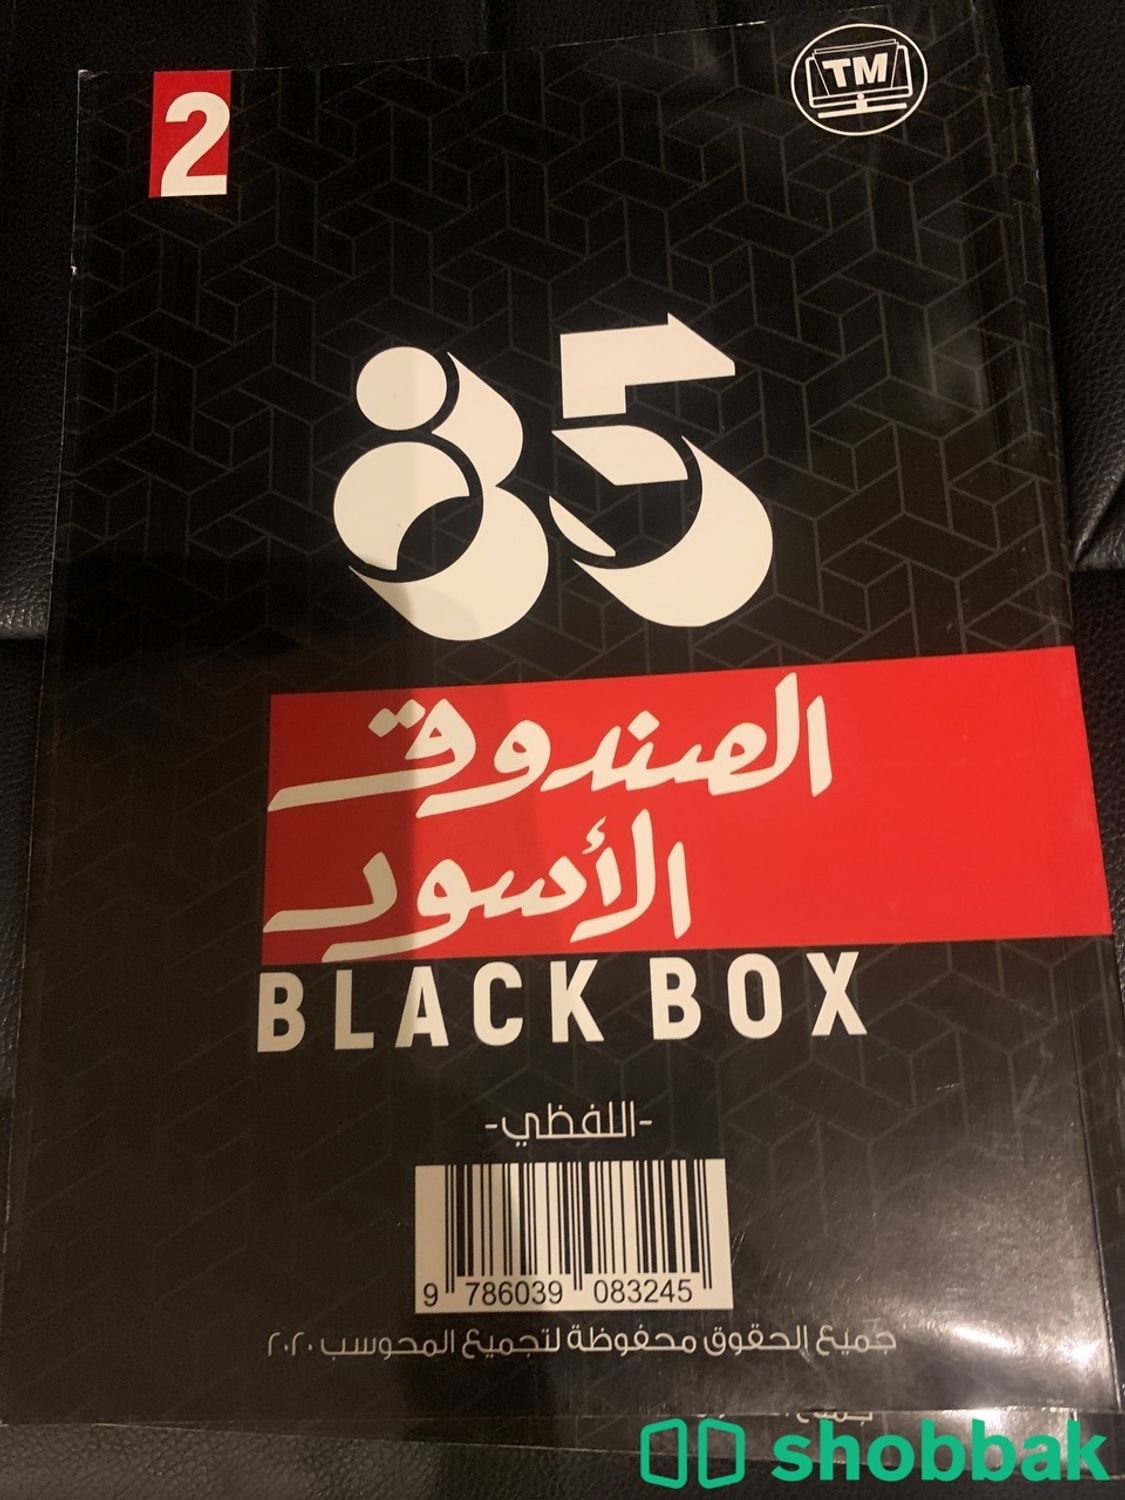 كتاب ناصر عبدالكريم 2021